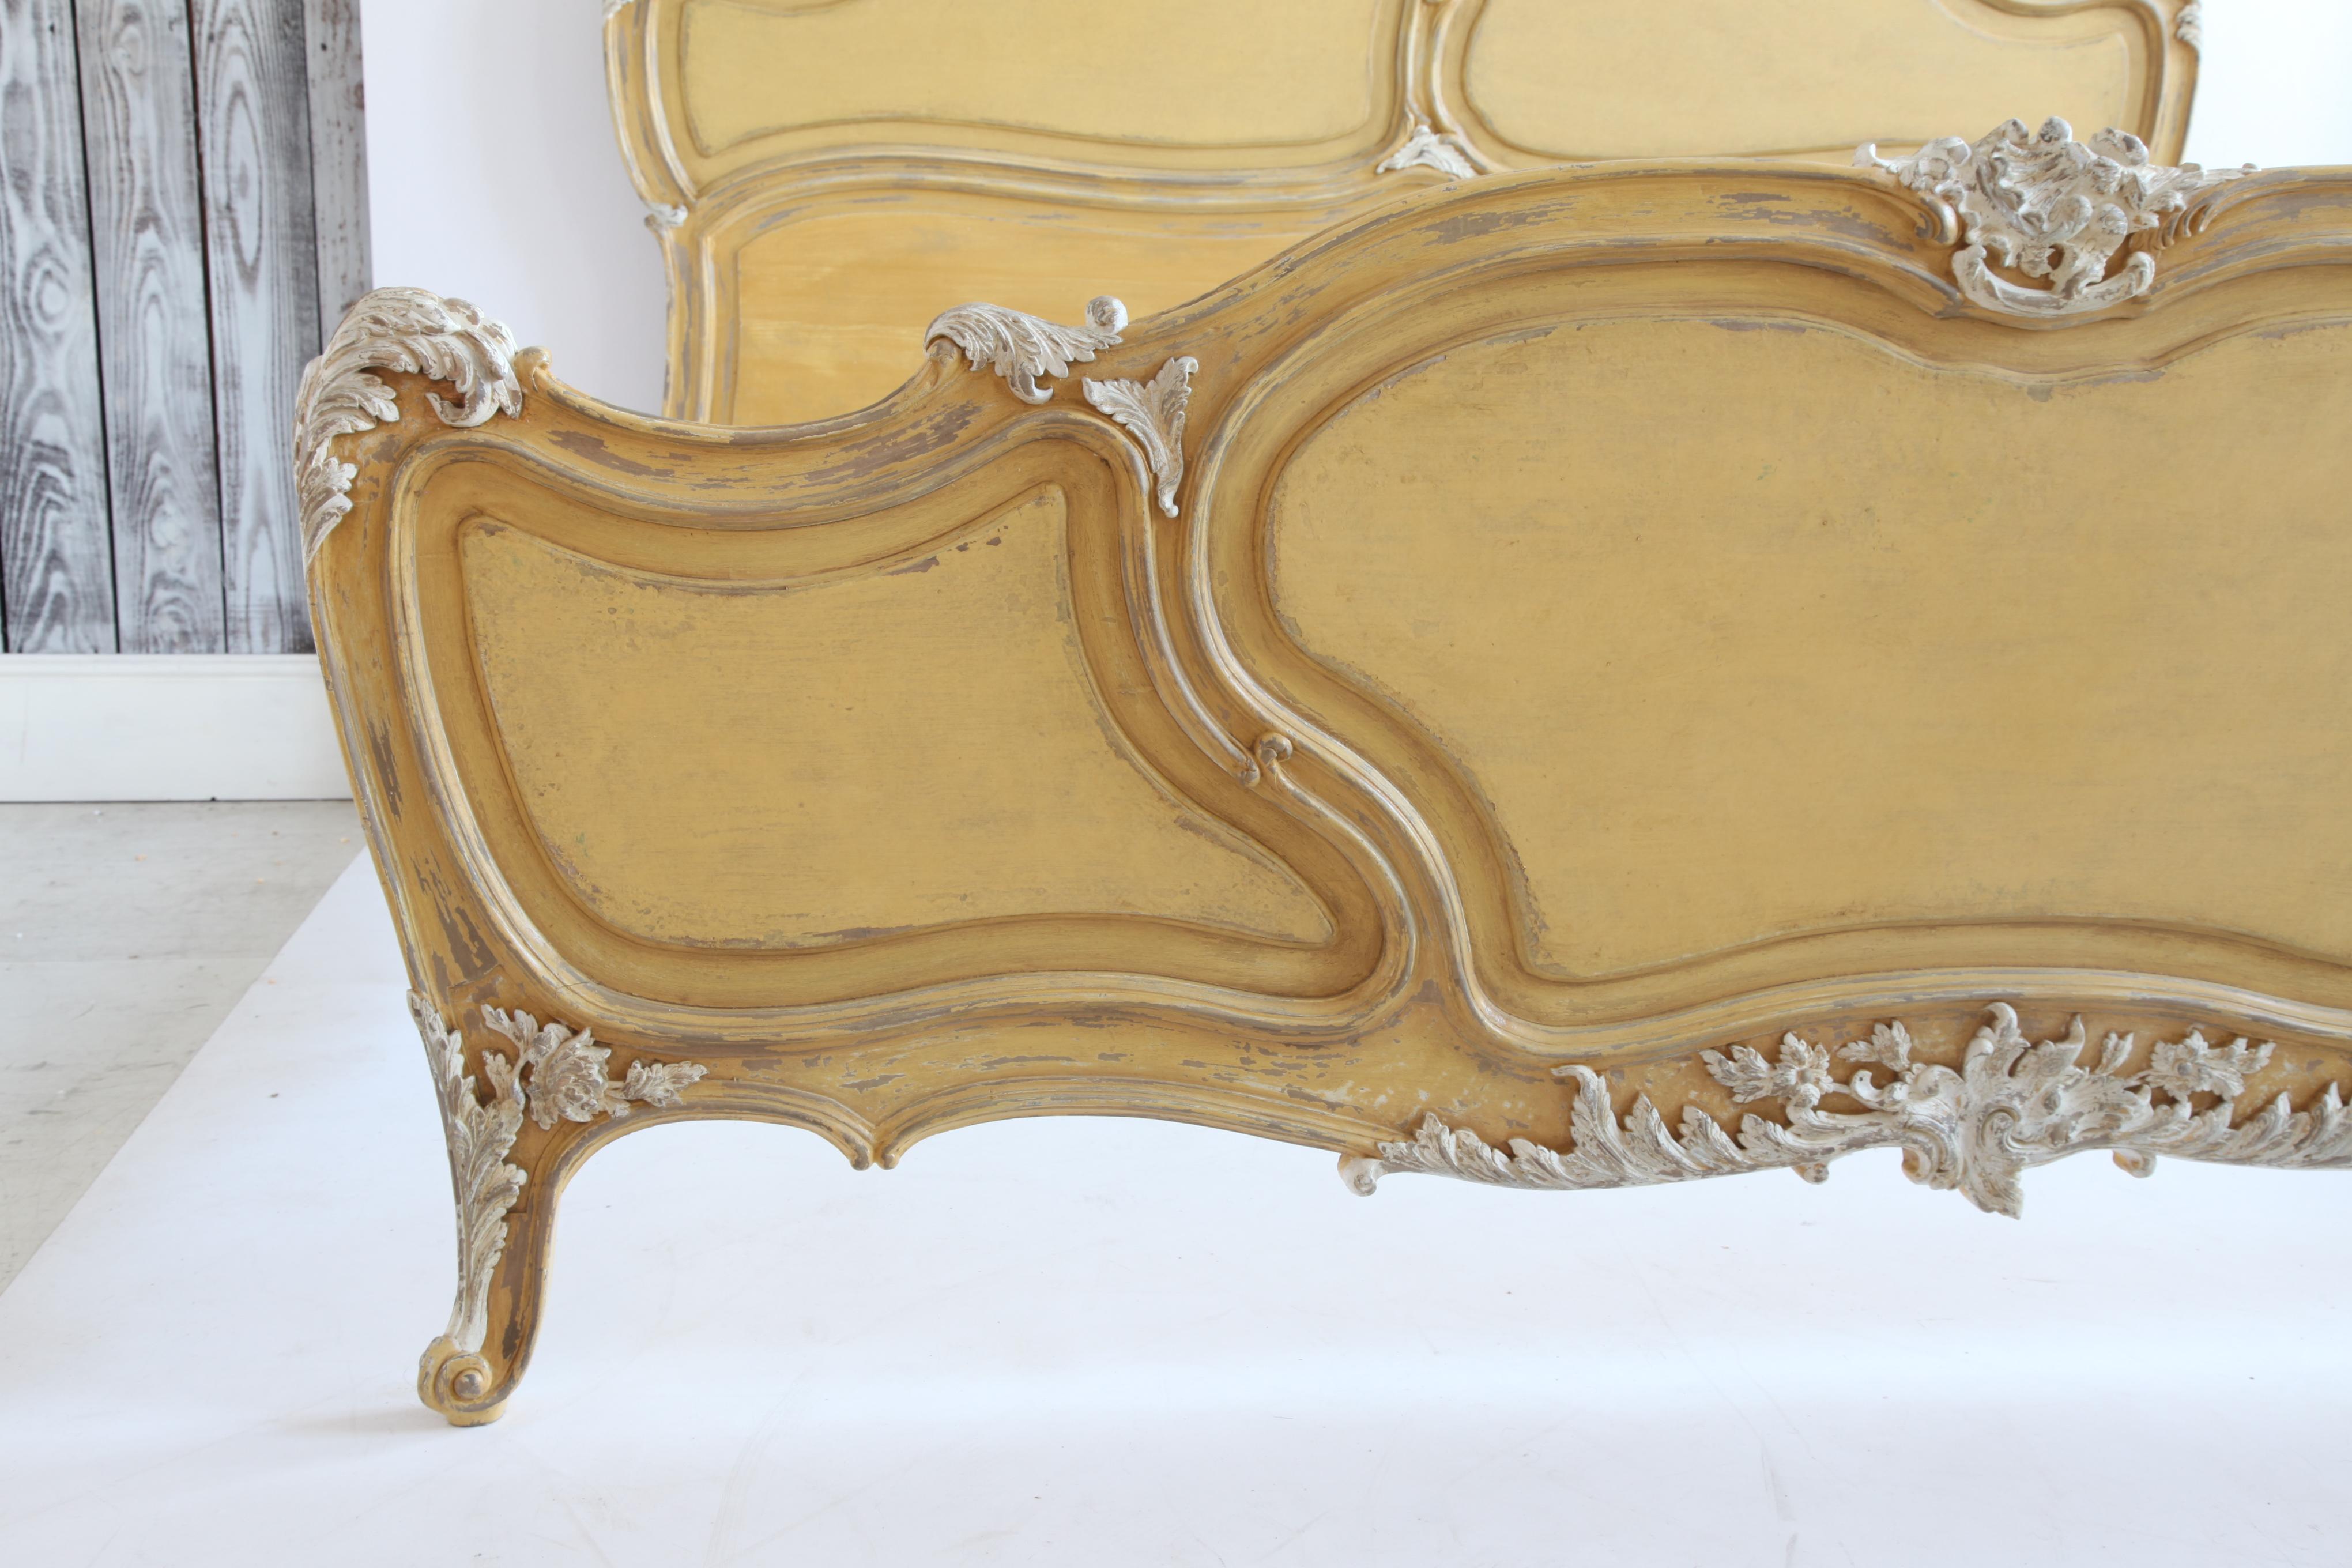 Bett im Stil von Rocaille Louis XV, hergestellt von La Maison London, handgeschnitzt aus Massivholz und handbemalt in einem provenzalischen Ockergelb mit weißen Akzenten.
Nehmen Sie eine 200 x 210 cm große Matratze (78 Zoll x 82 Zoll). Wir liefern